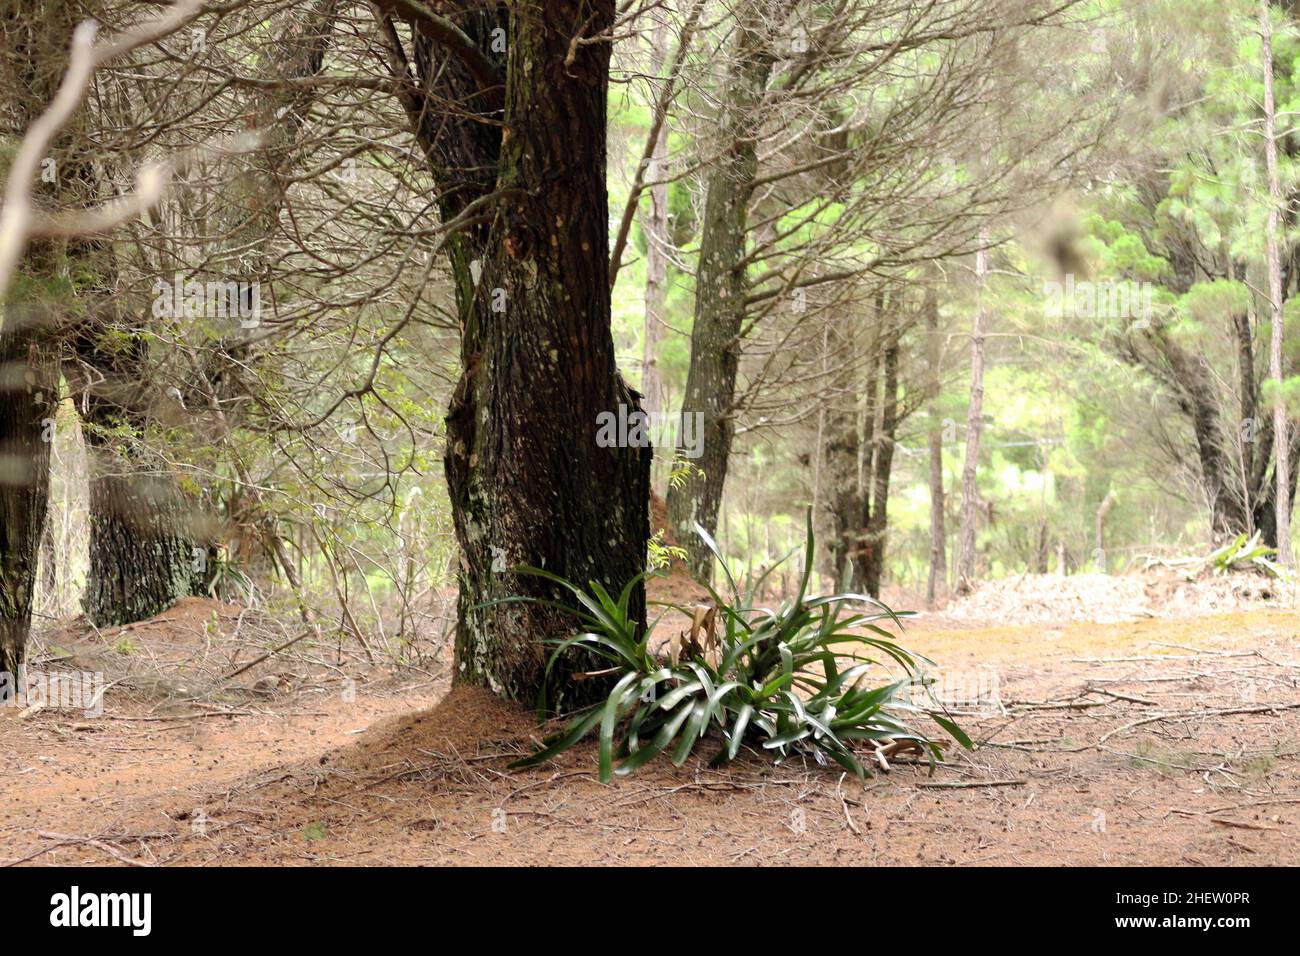 Forêt de pin Elliotis, la résine de ses feuilles tue la sous-croissance et le sol indigène. Banque D'Images